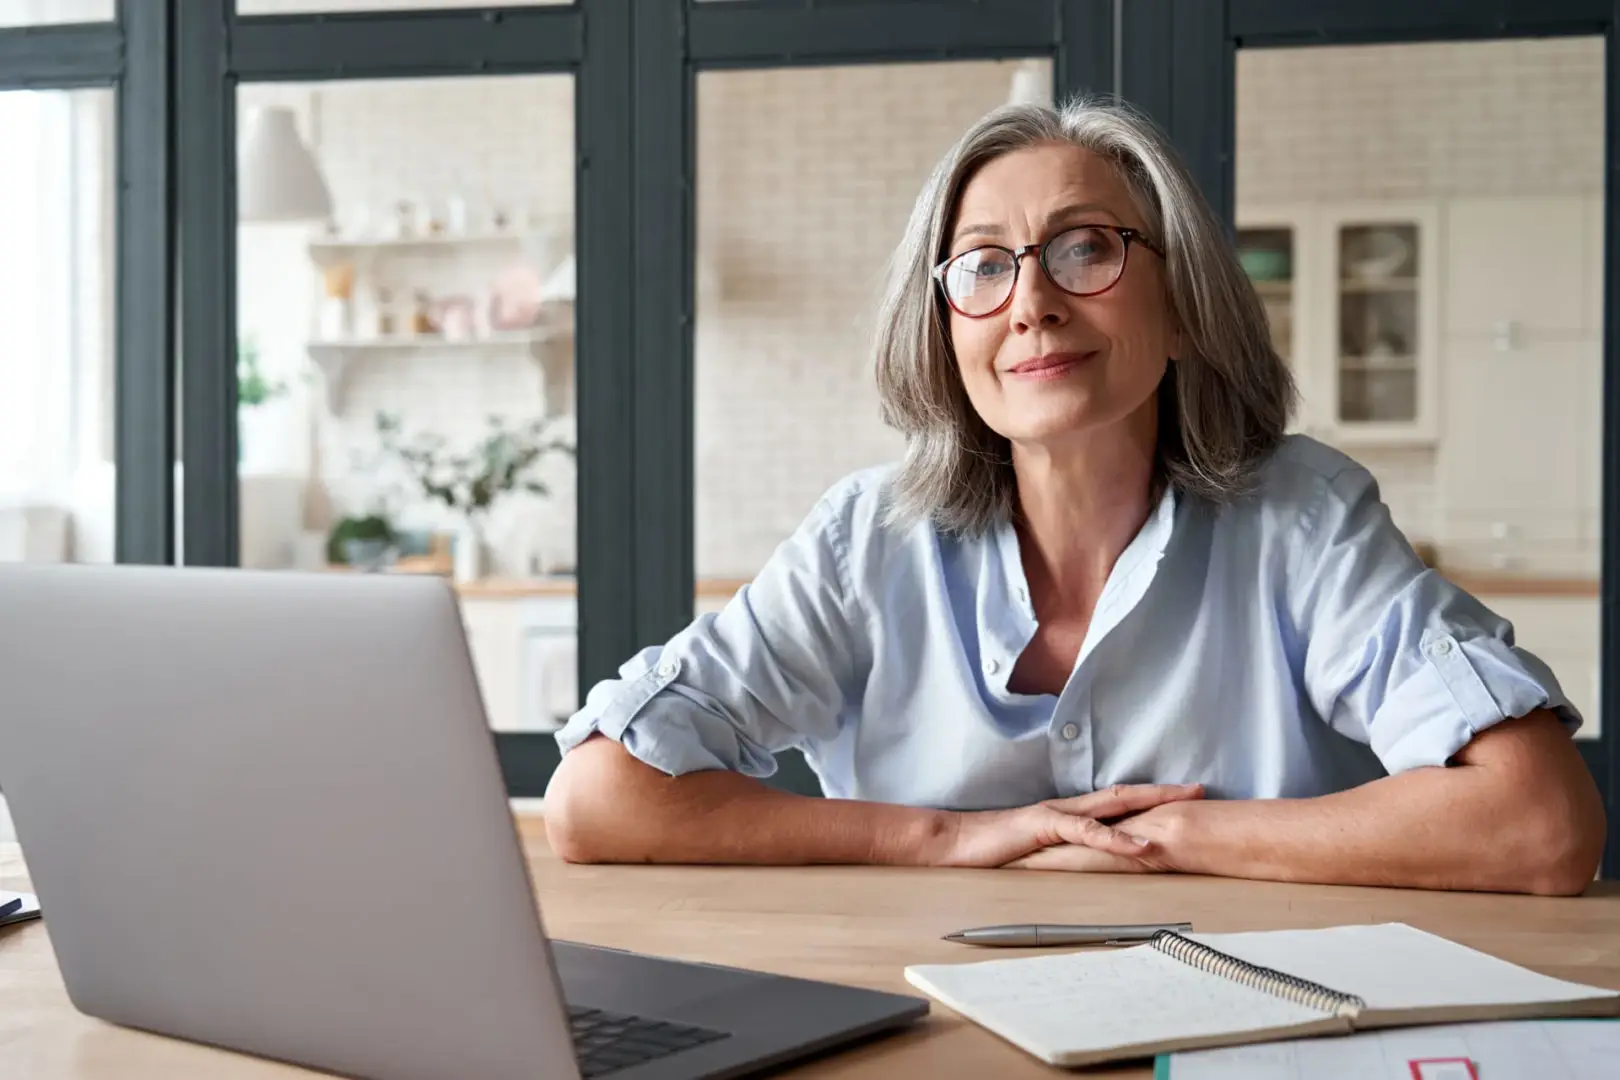 Eine ältere Frau mit grauen Haaren und brauner Brille, die lächelnd in die Kamera schaut und gerade ein Onlinecoaching absolviert.